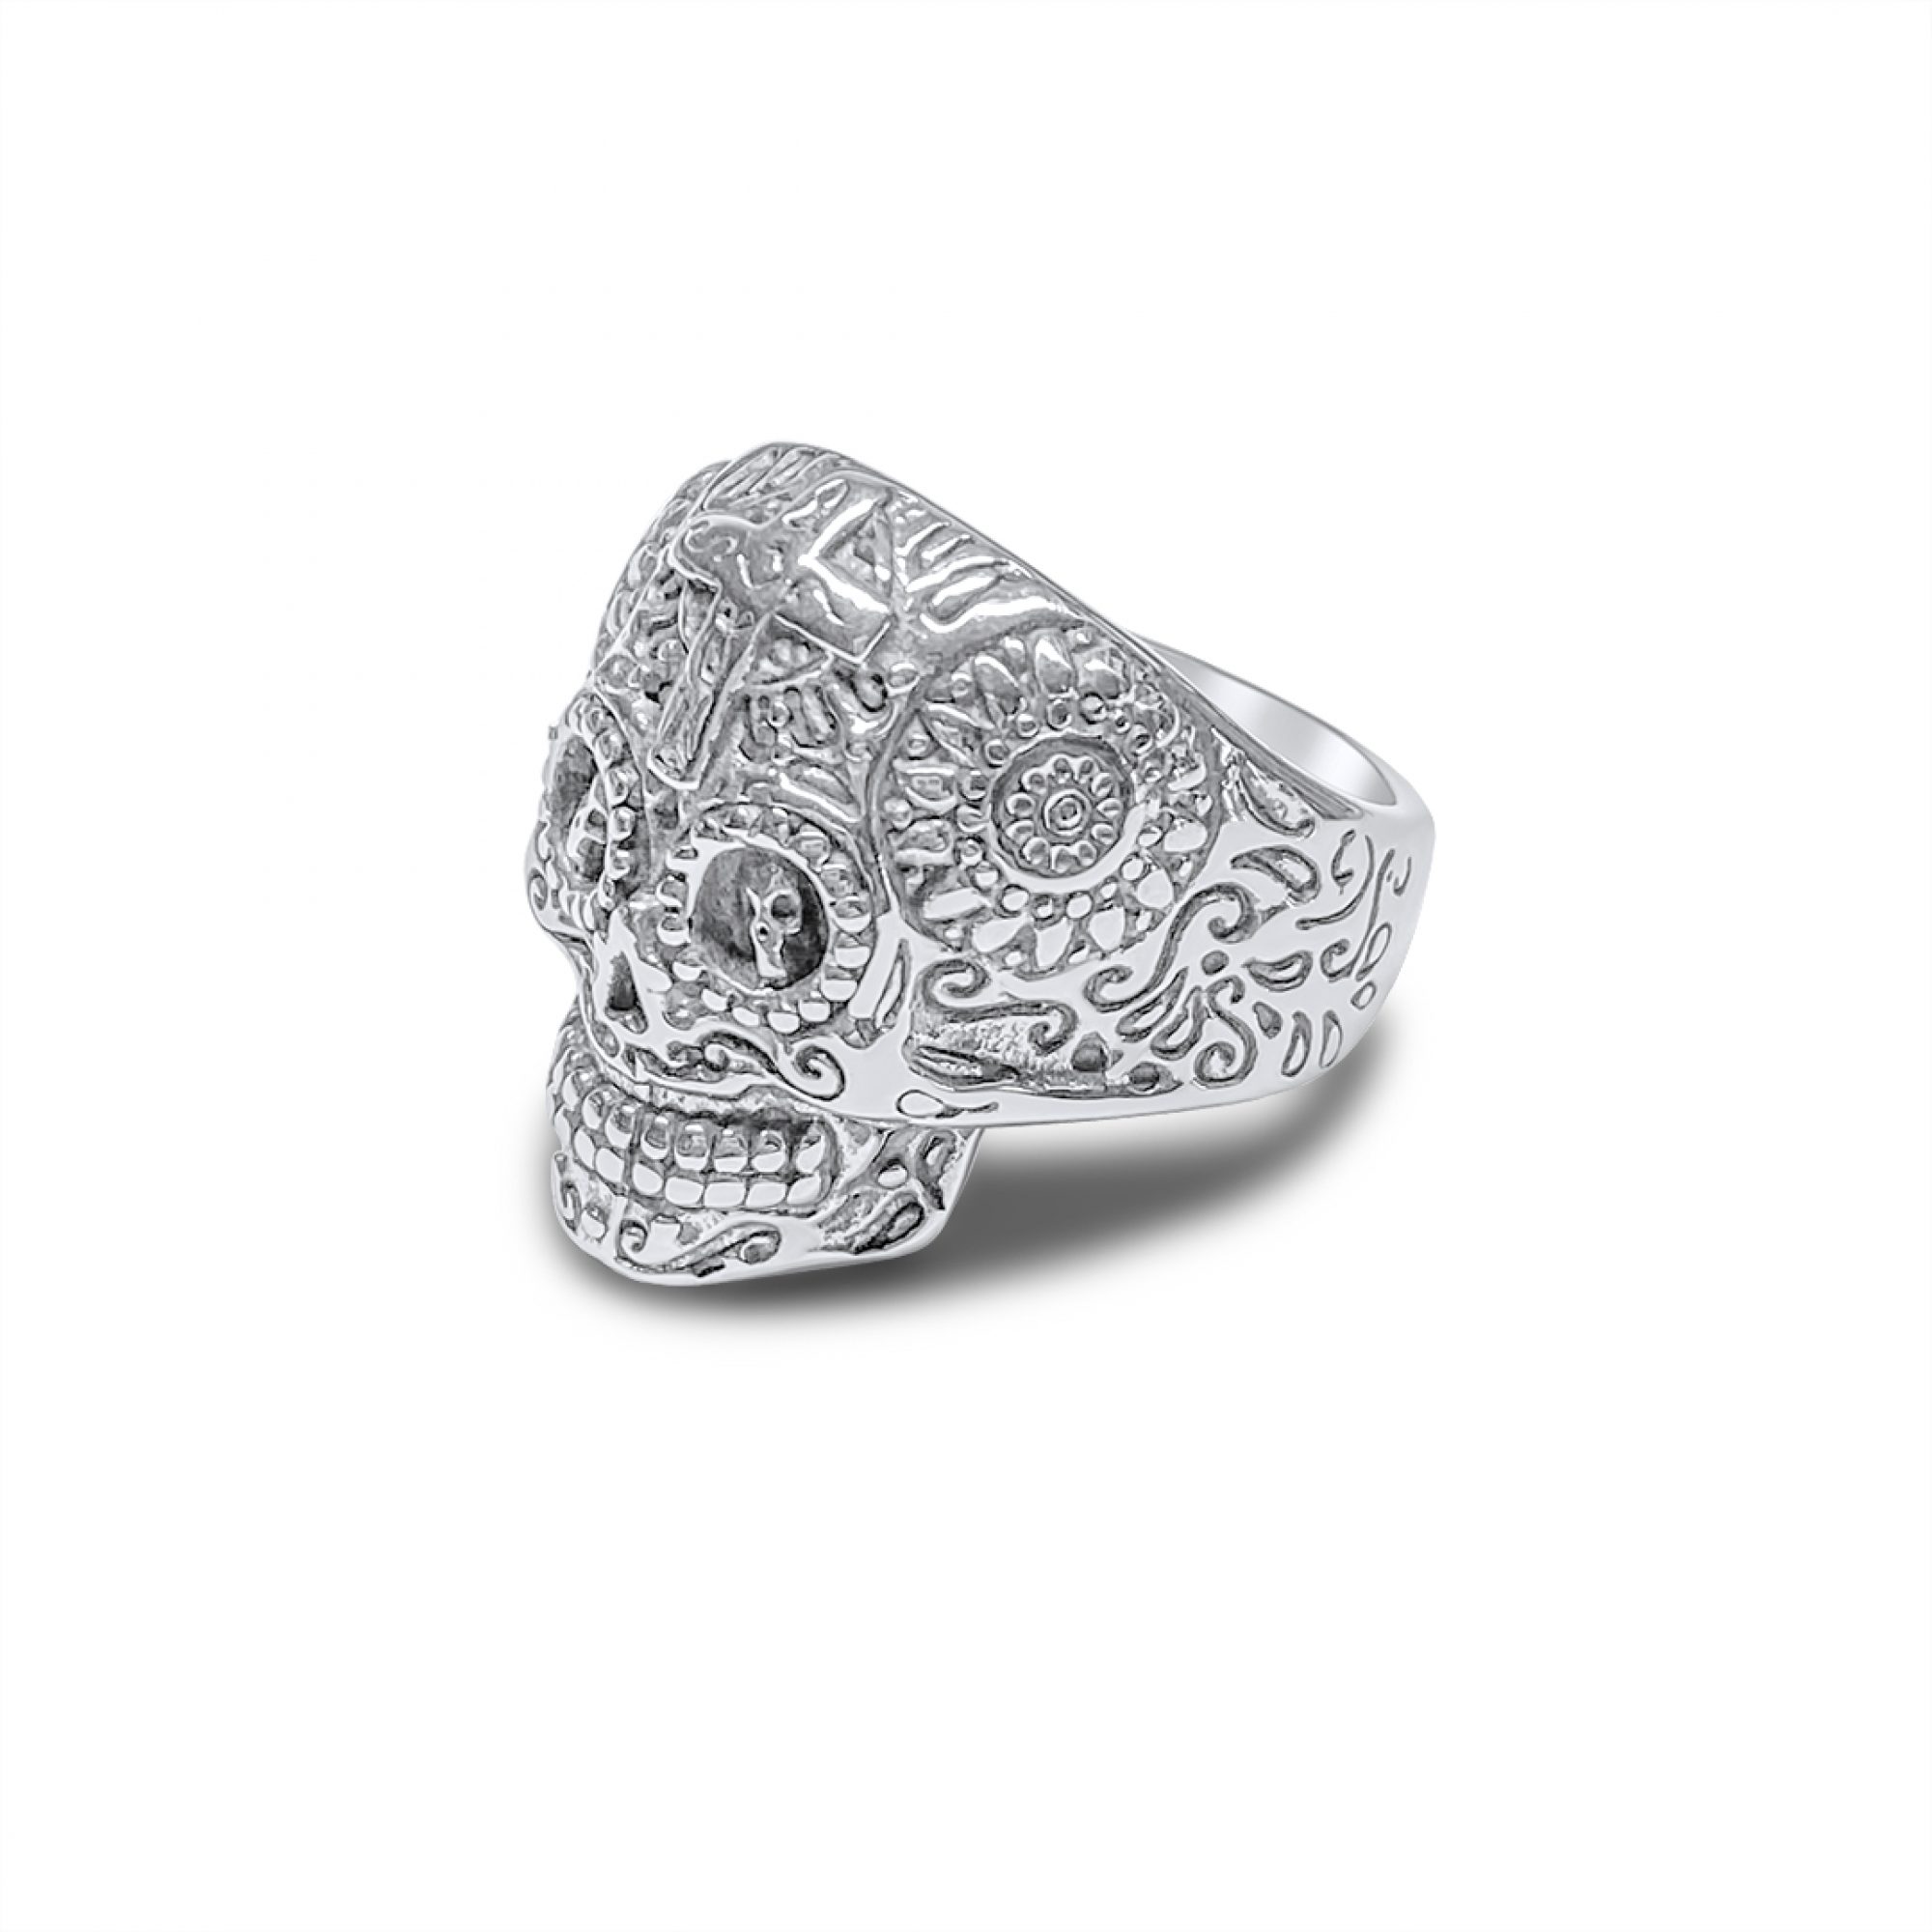 Steel skull ring